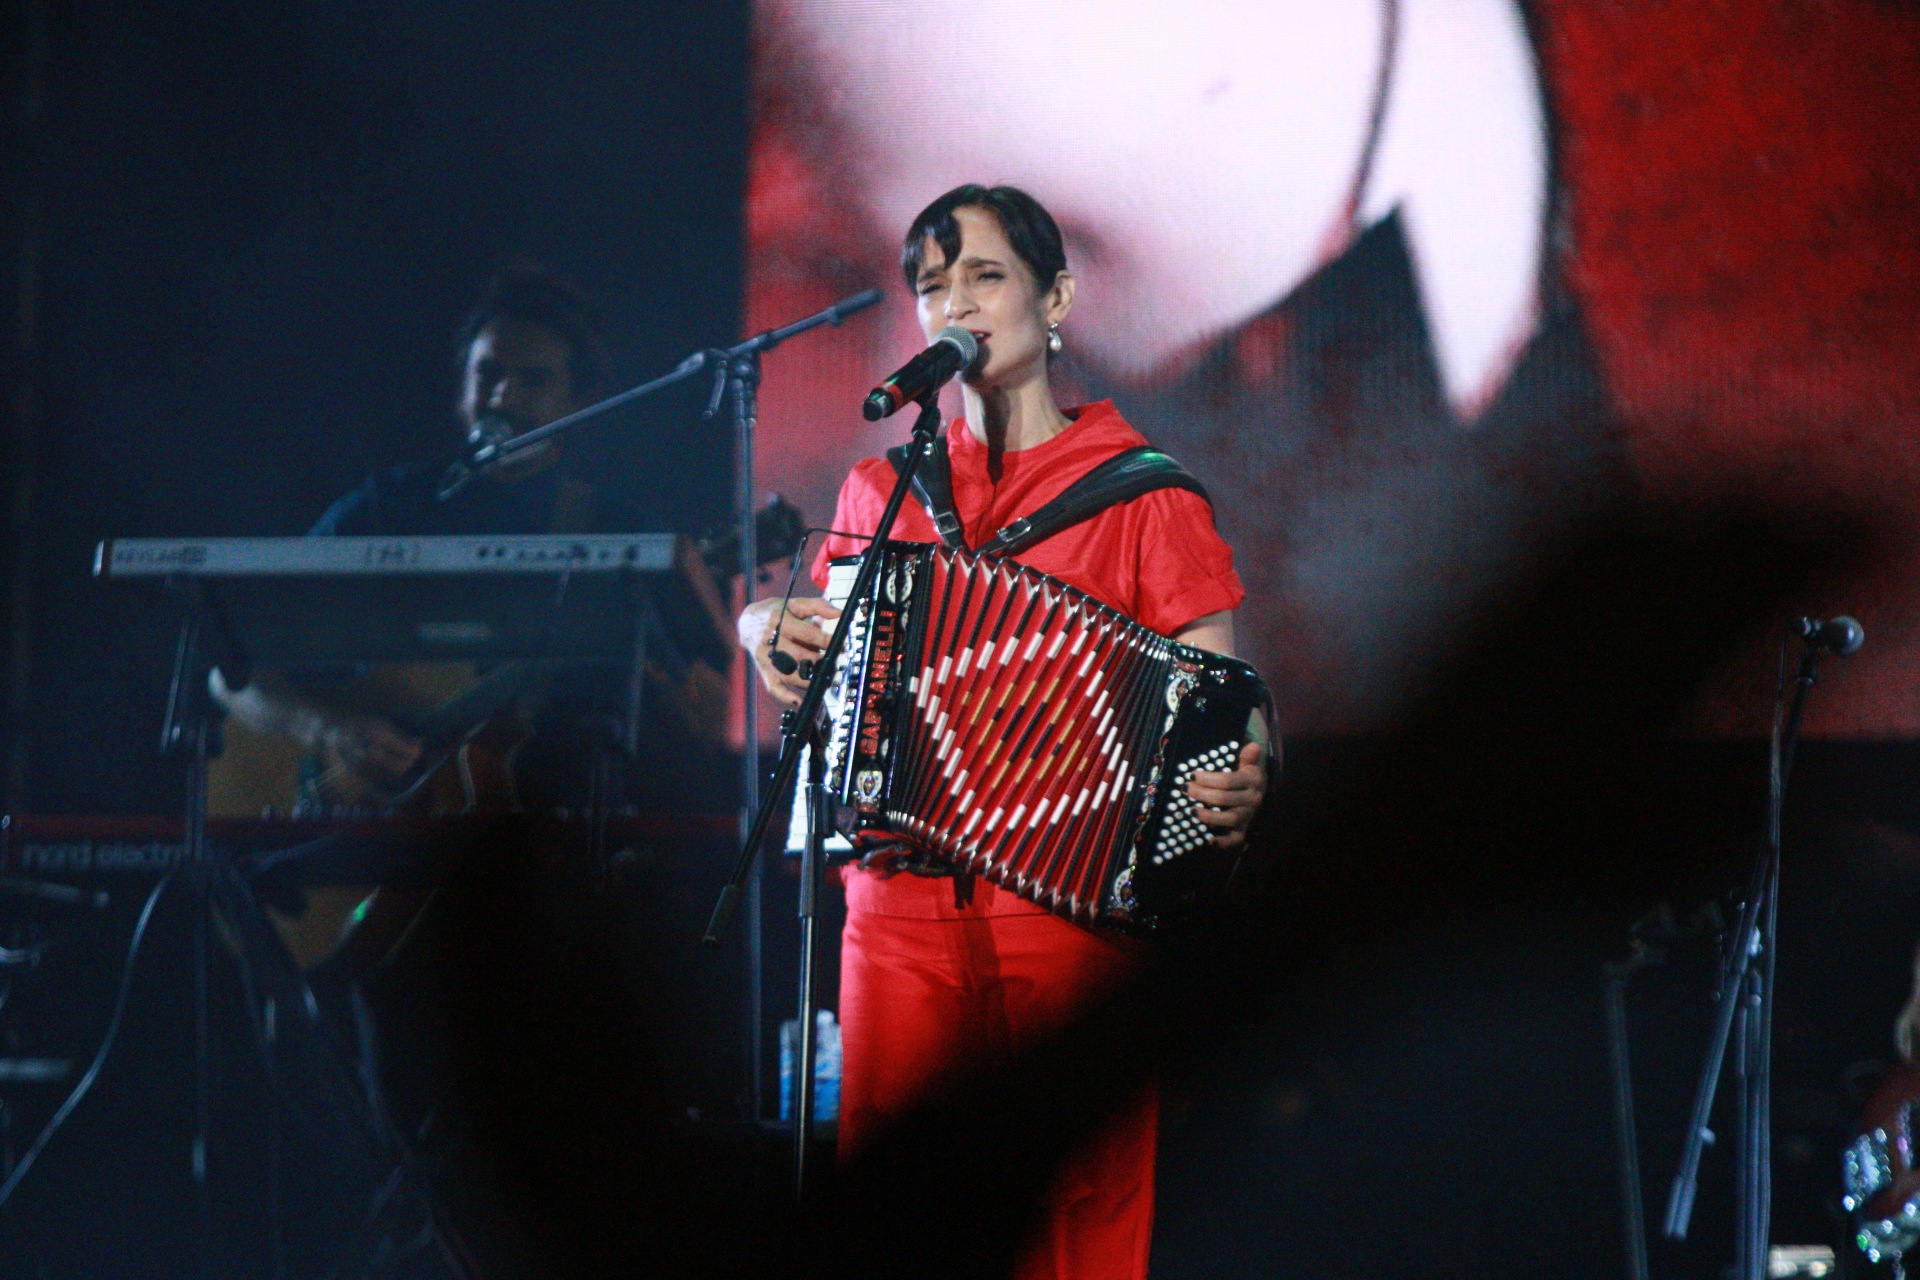 El concierto de Julieta Venegas en el Vive Latino fue completamente dedicado a las mujeres y su revolución (Foto: Gustavo Azem / Infobae)